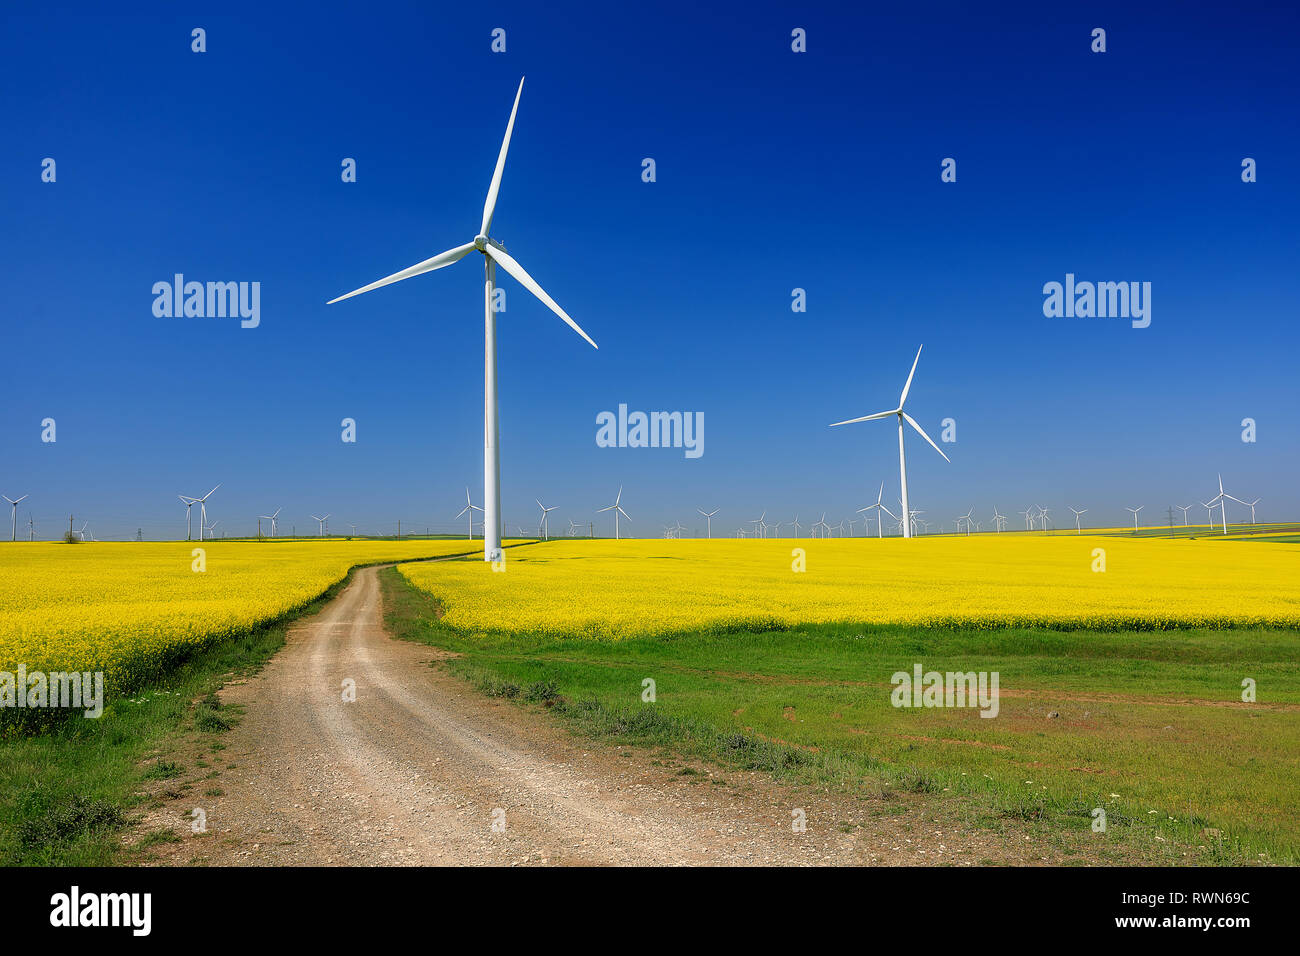 Éoliennes. Les champs avec les moulins à vent. Champ de colza en fleur. L'énergie renouvelable. Protéger l'environnement. Dobrogea, Roumanie Banque D'Images